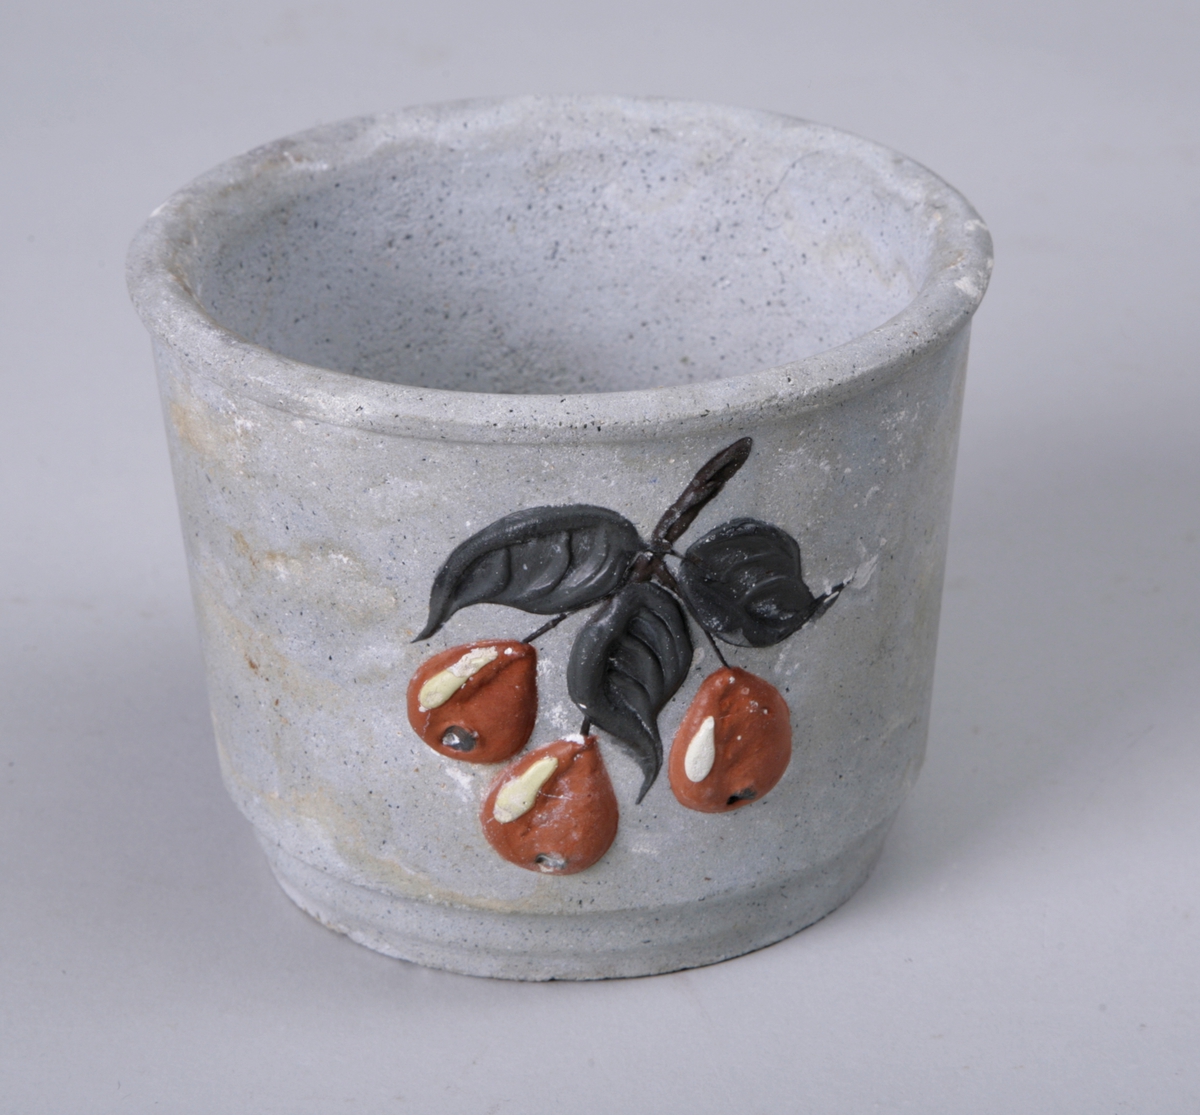 Sylinderformet potte til å sette blomsterpotter i. Dekorert med påmalte blader og bær.